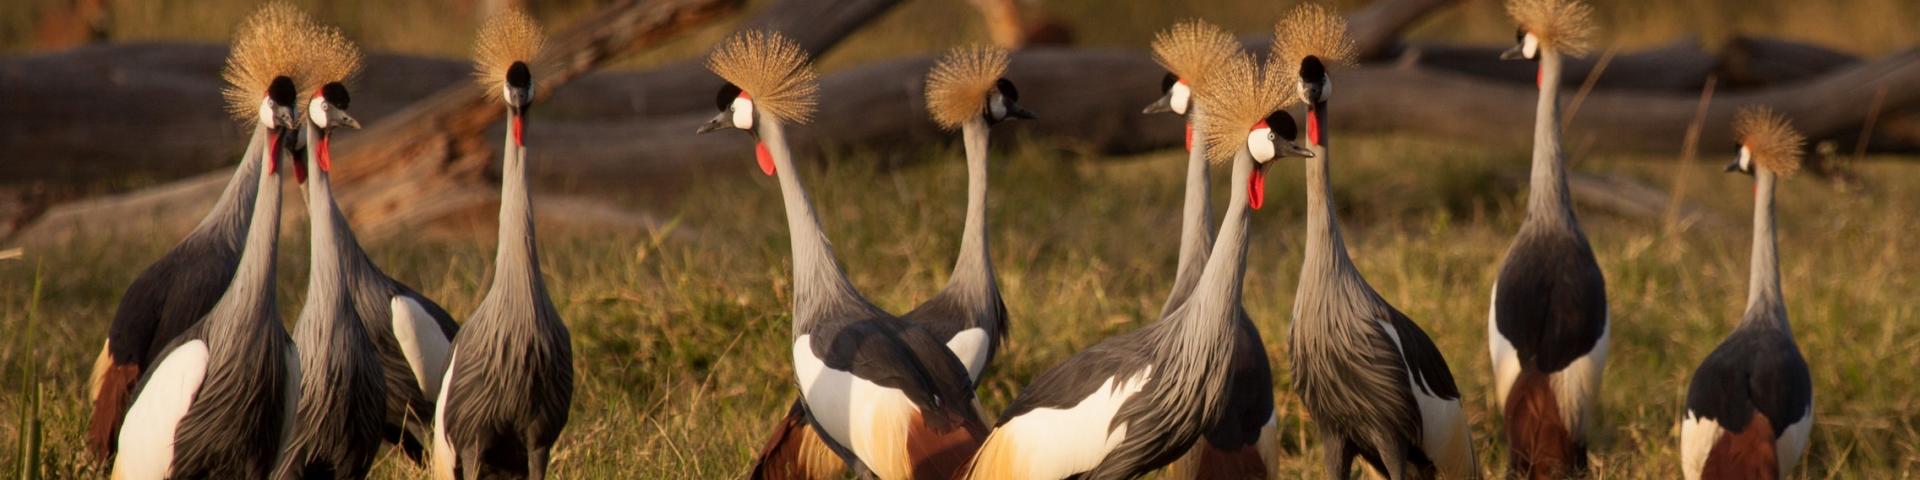 Niesamowity świat ptaków w Kenii - atrakcje przyrodnicze Afryki